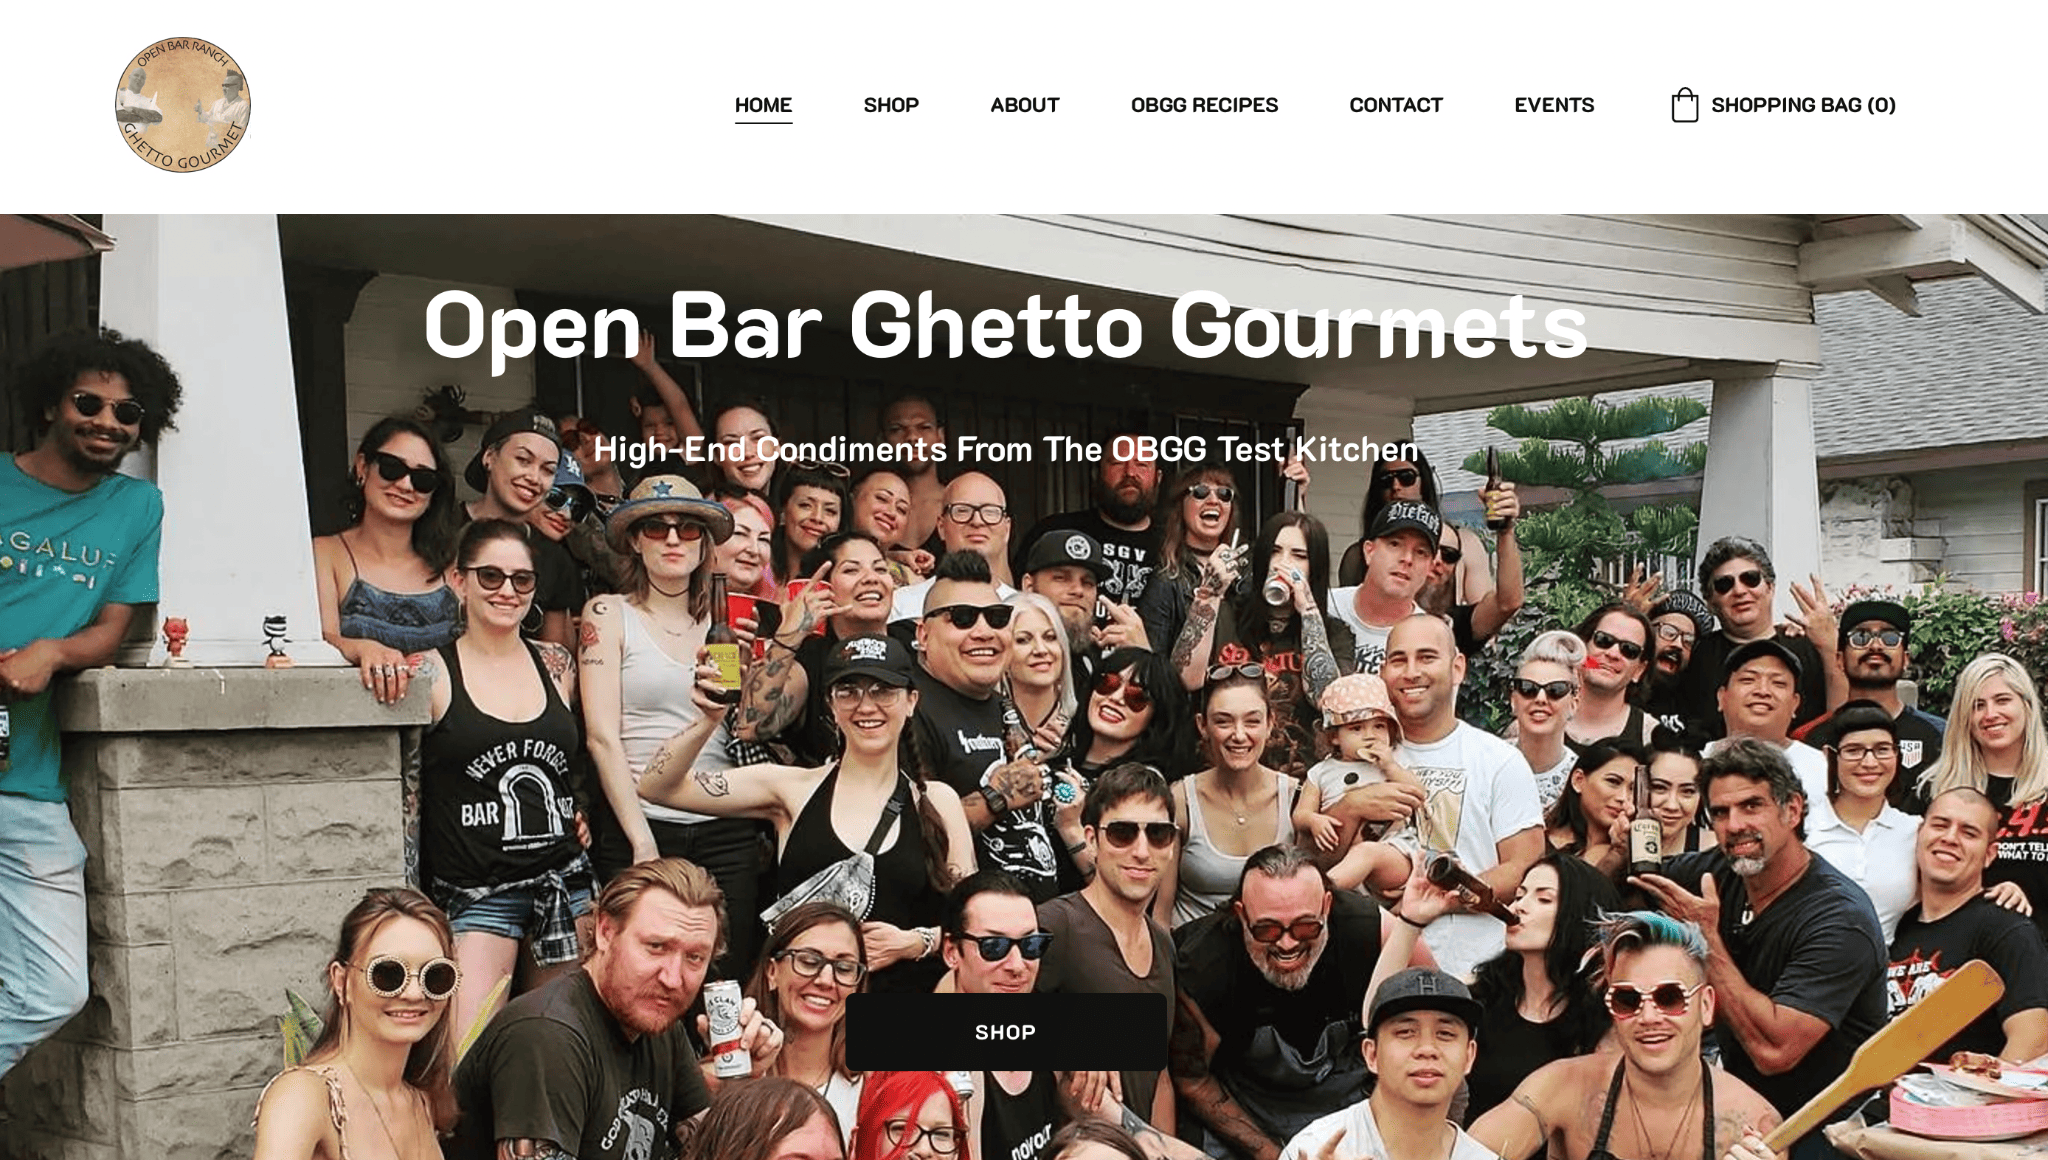 Beispiel einer Zyro-Website – offene Bar für Ghetto-Gourmets